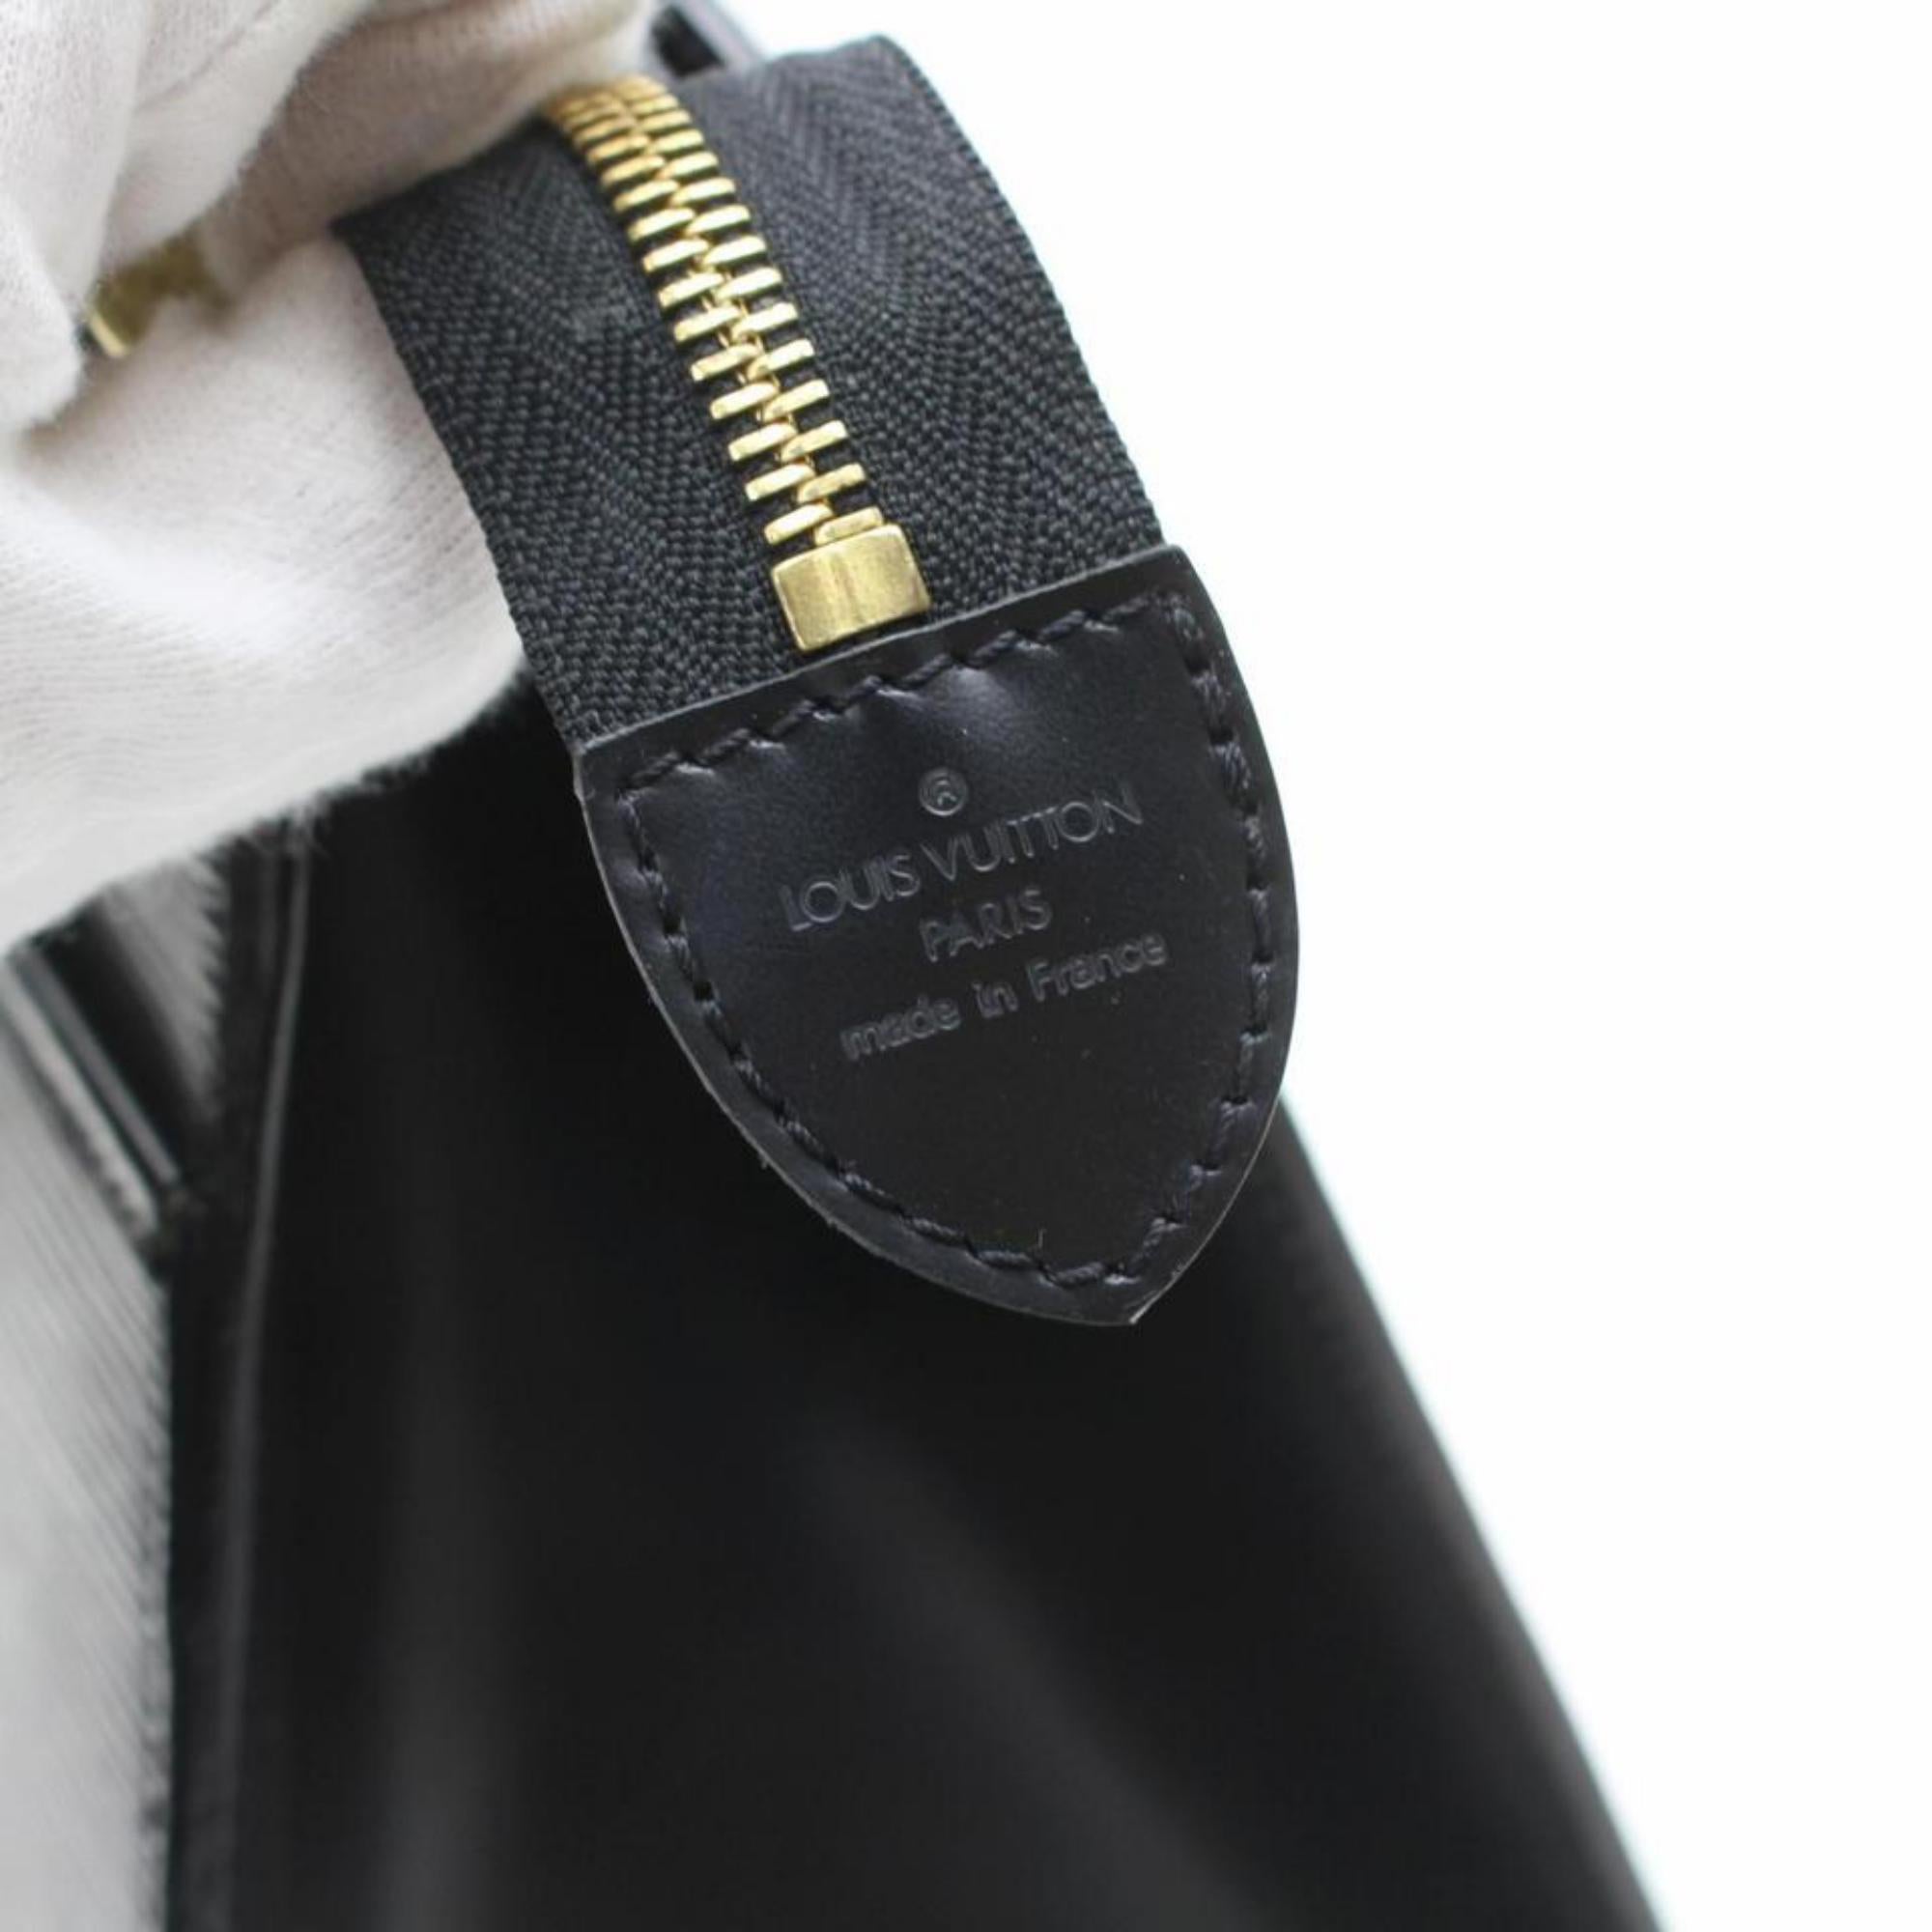 Louis Vuitton Riviera Vanity Case 868557 Black Leather Satchel For Sale 6